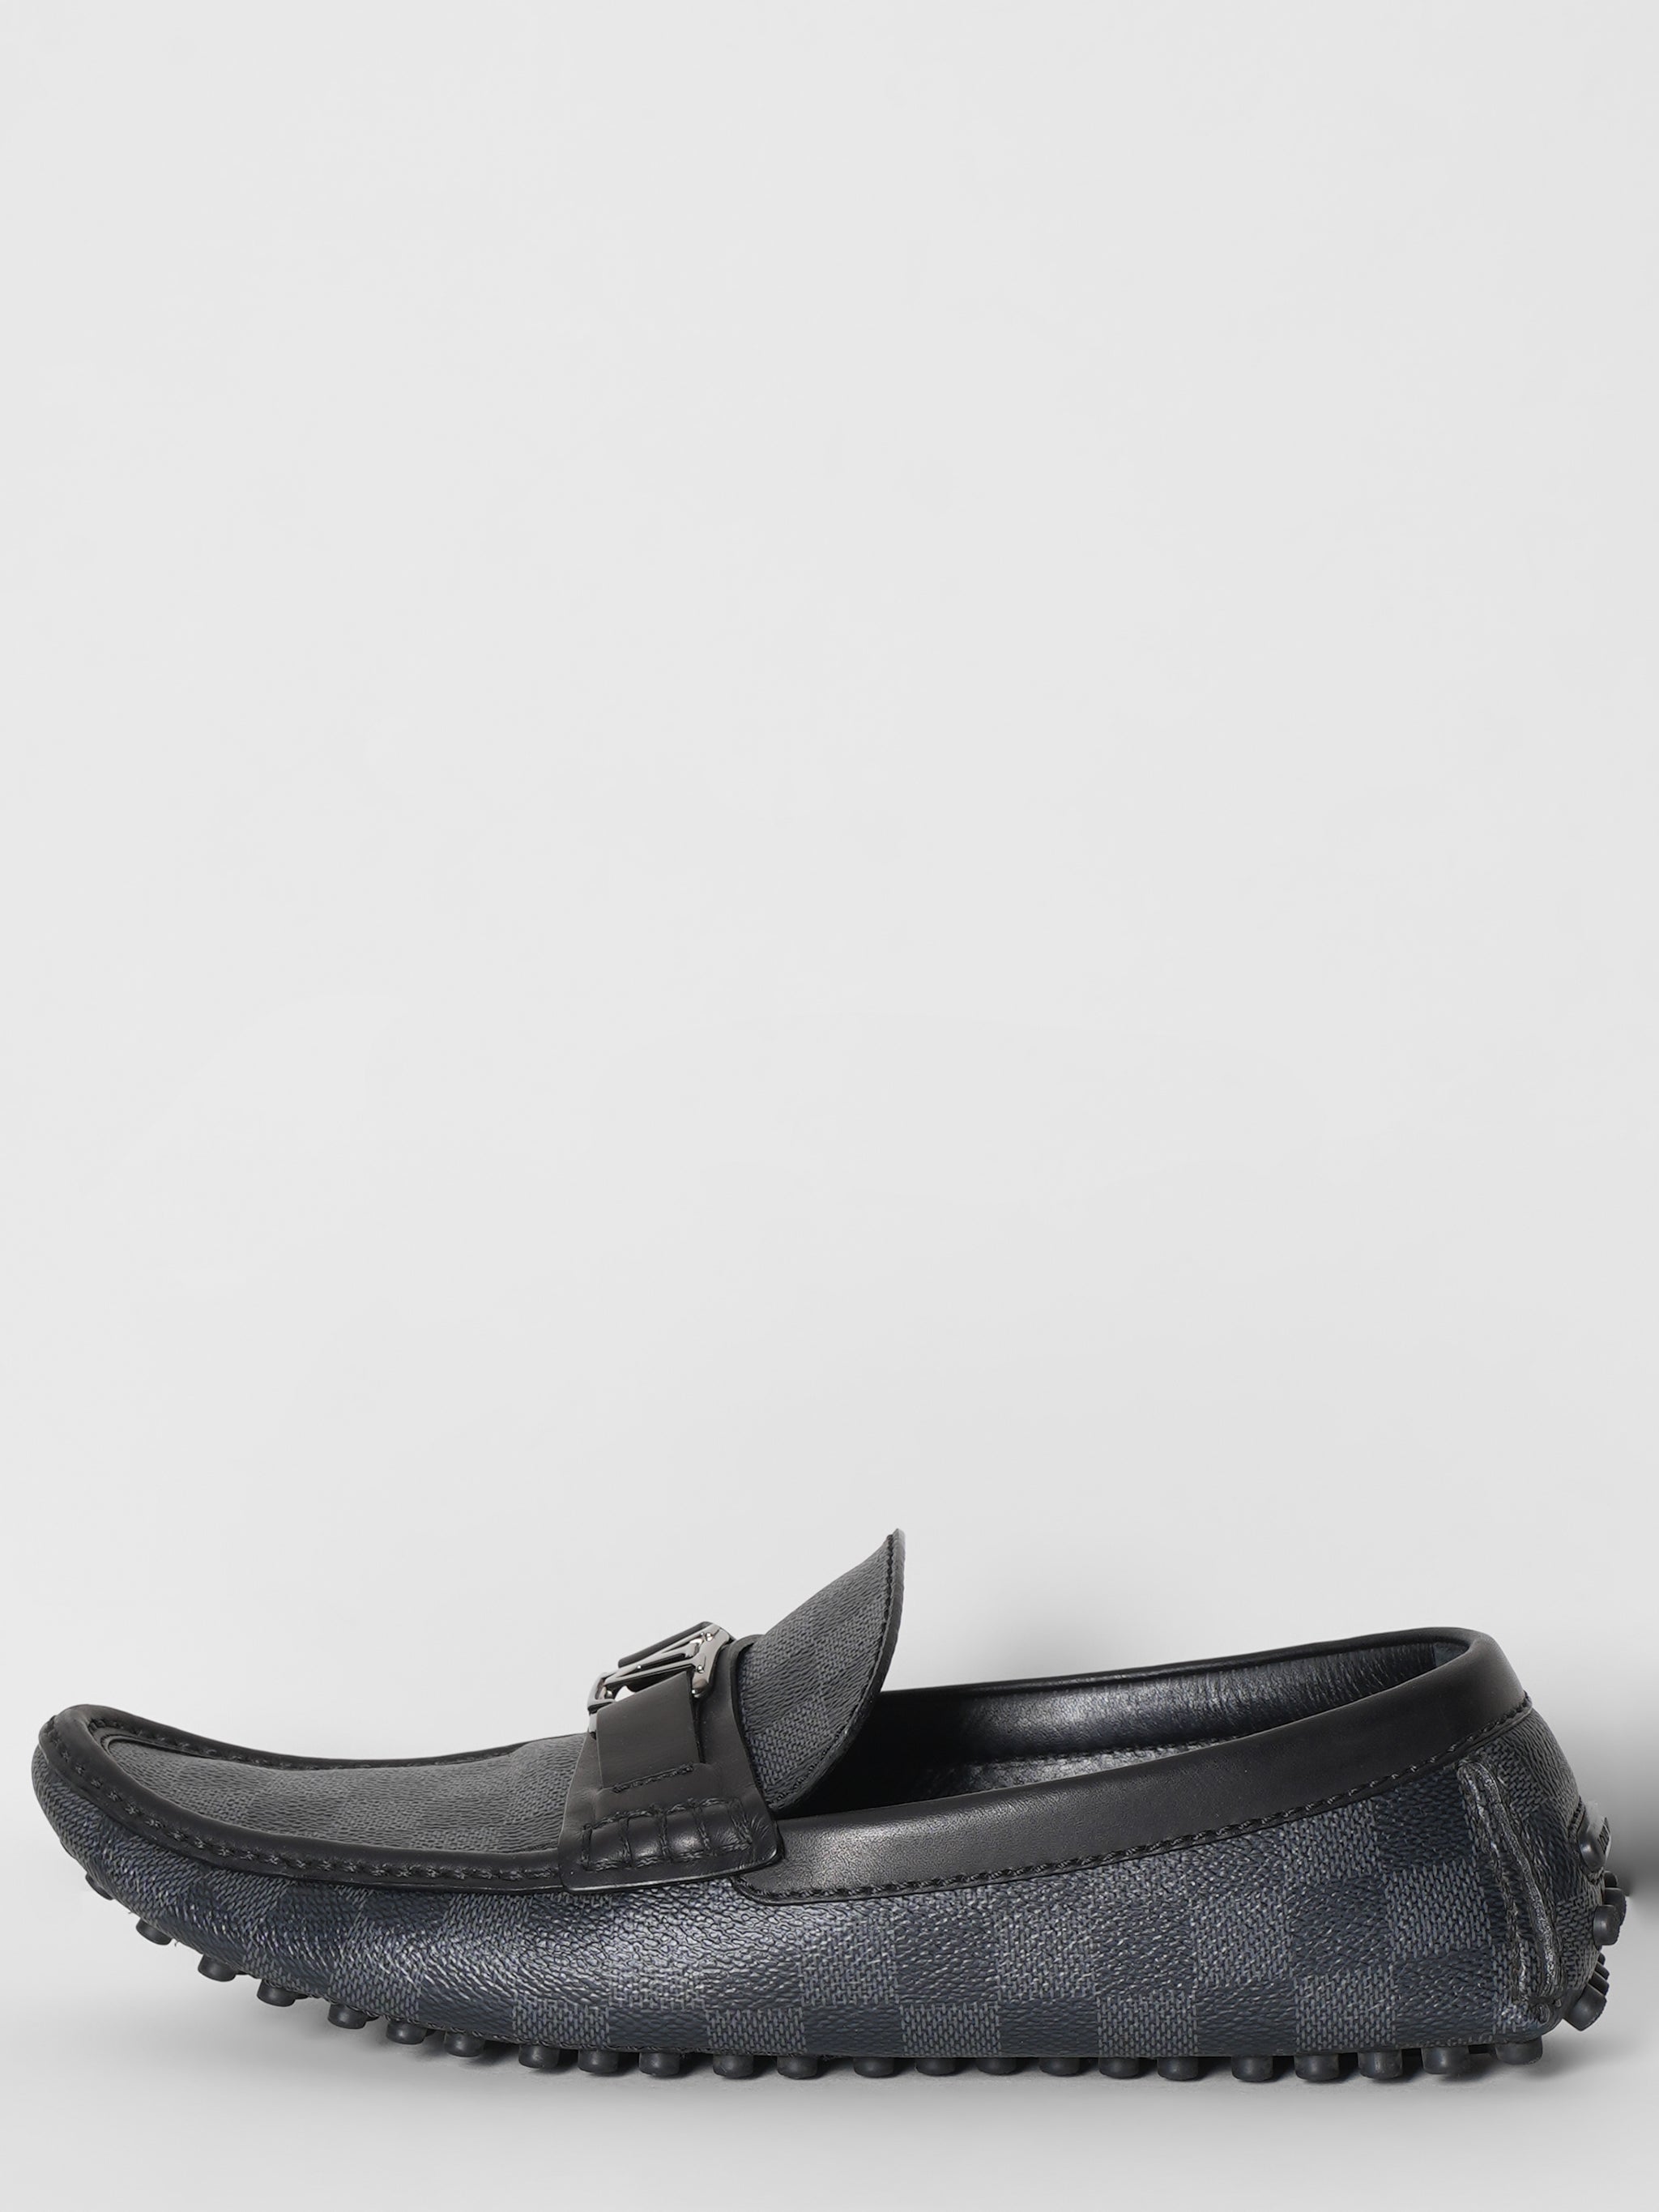 Louis Vuitton Mens Damier Shoes